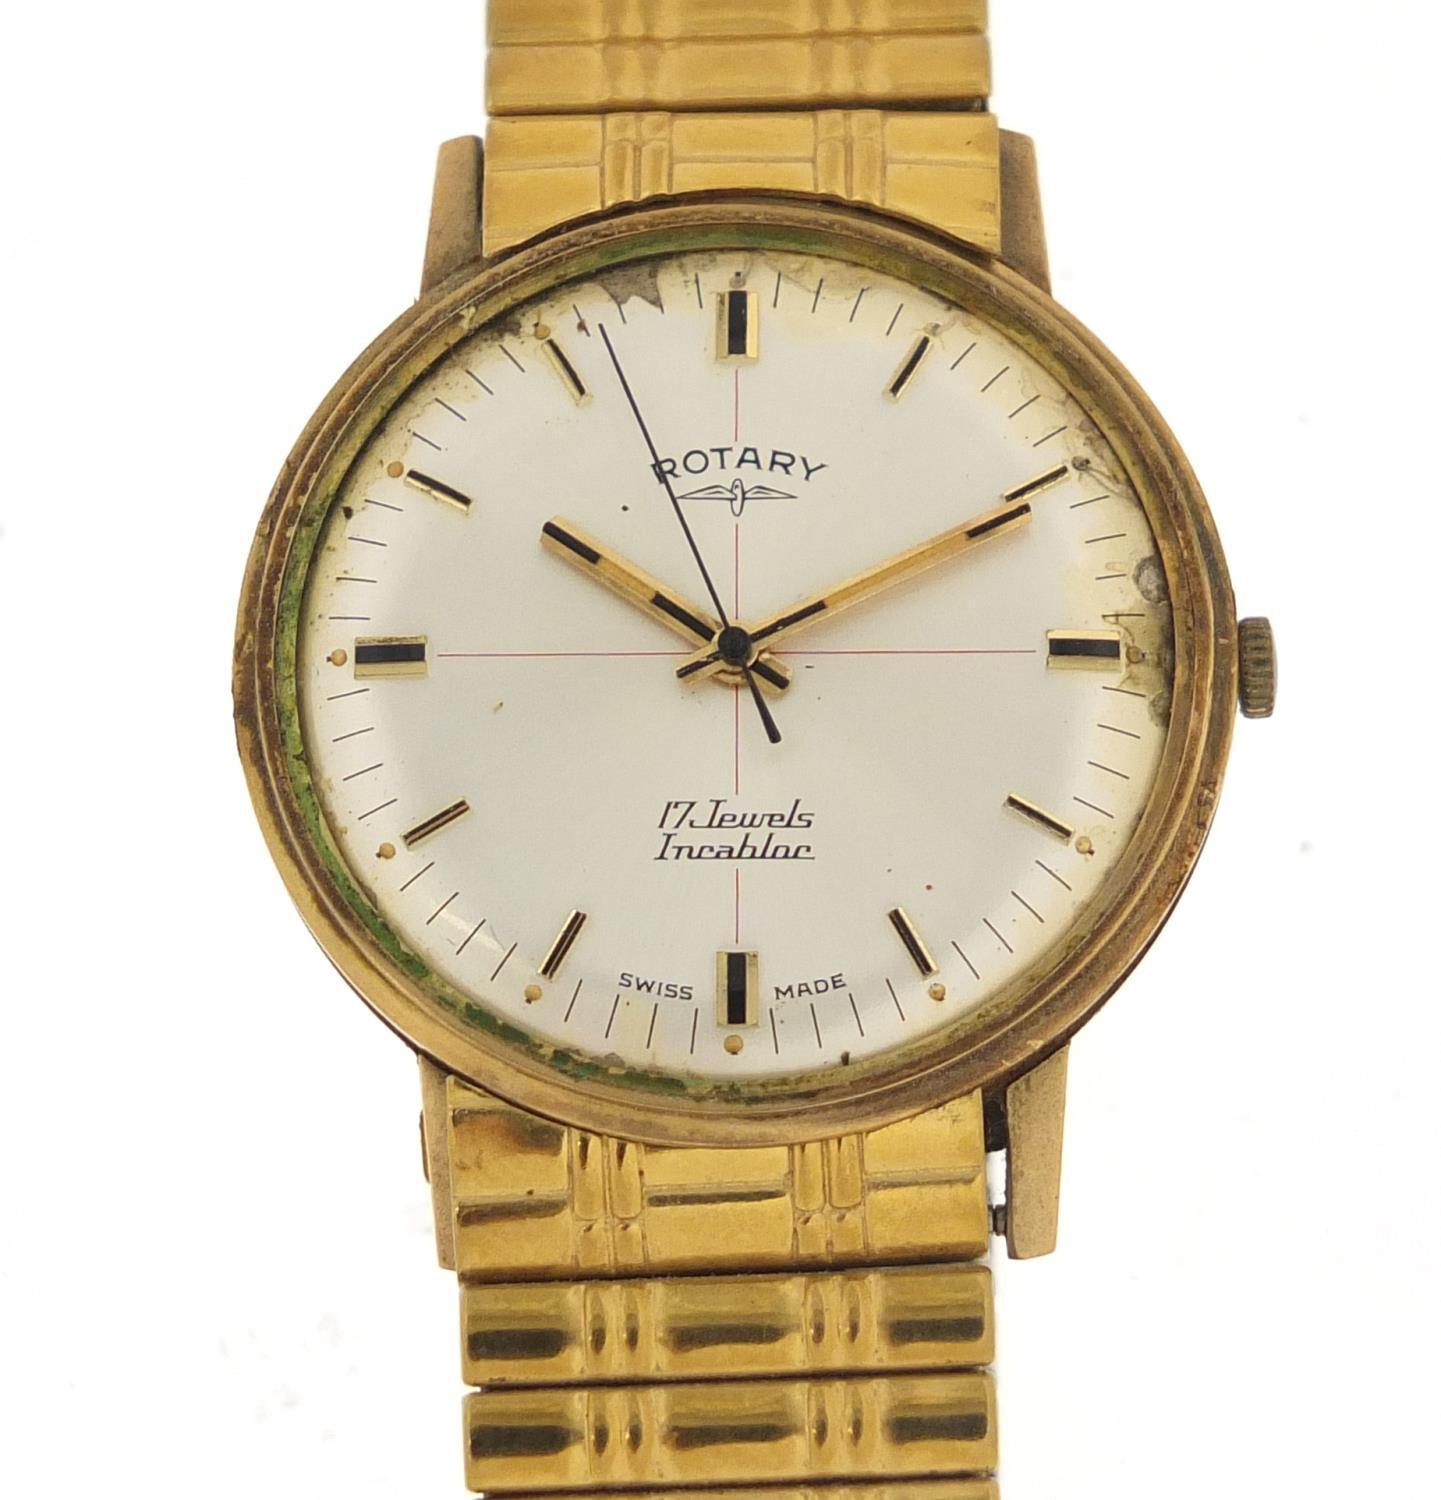 Rotary, gentlemen's 9ct manual wristwatch, 34mm in diameter